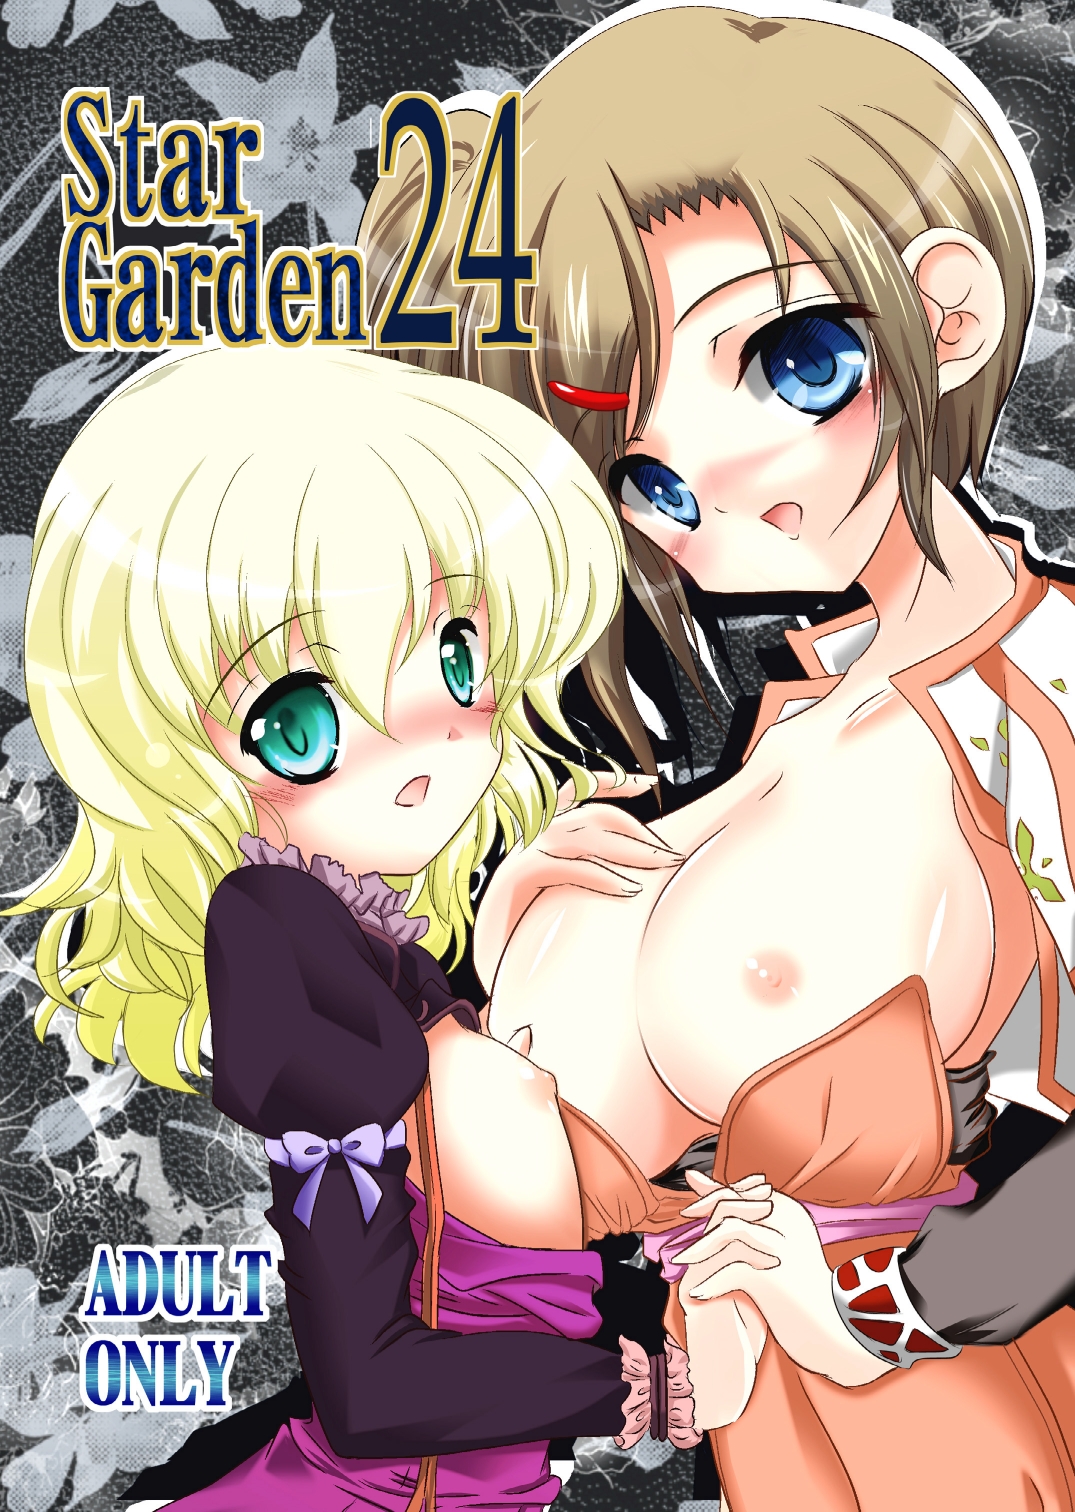 Star Garden 24 01